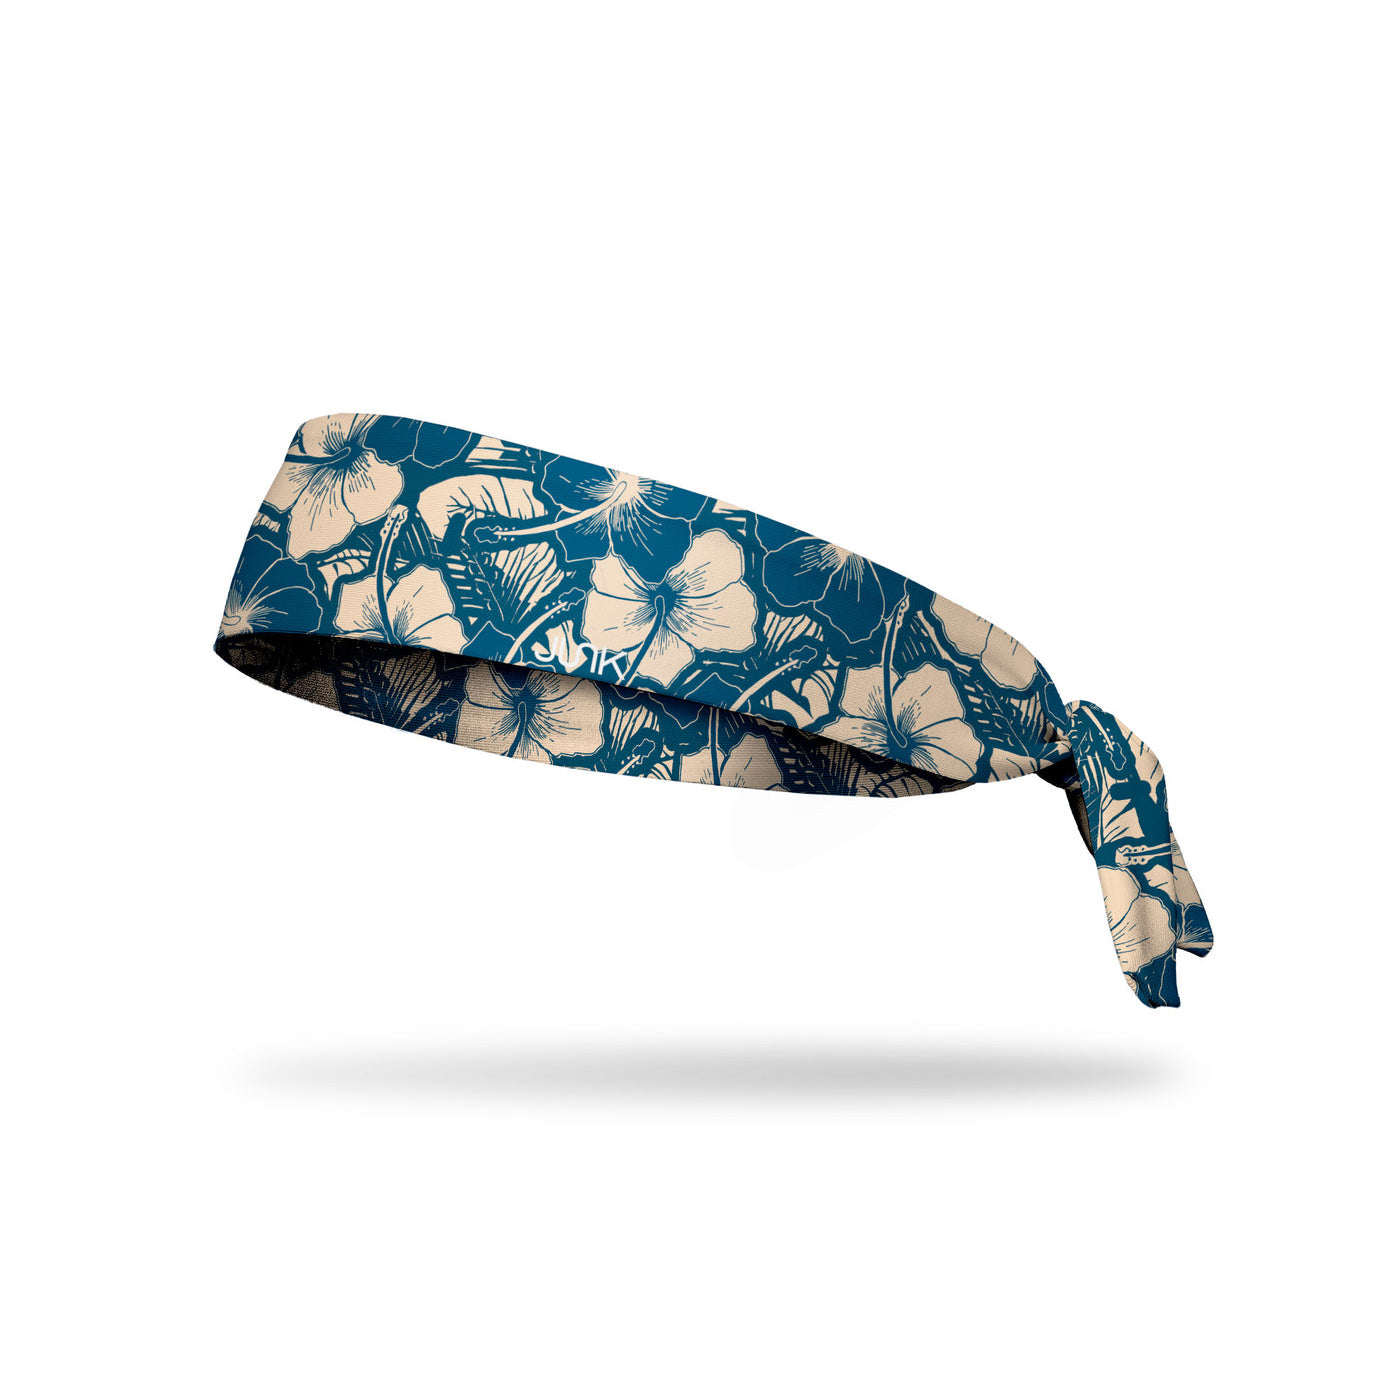 JUNK Dreamer Headband (Flex Tie)